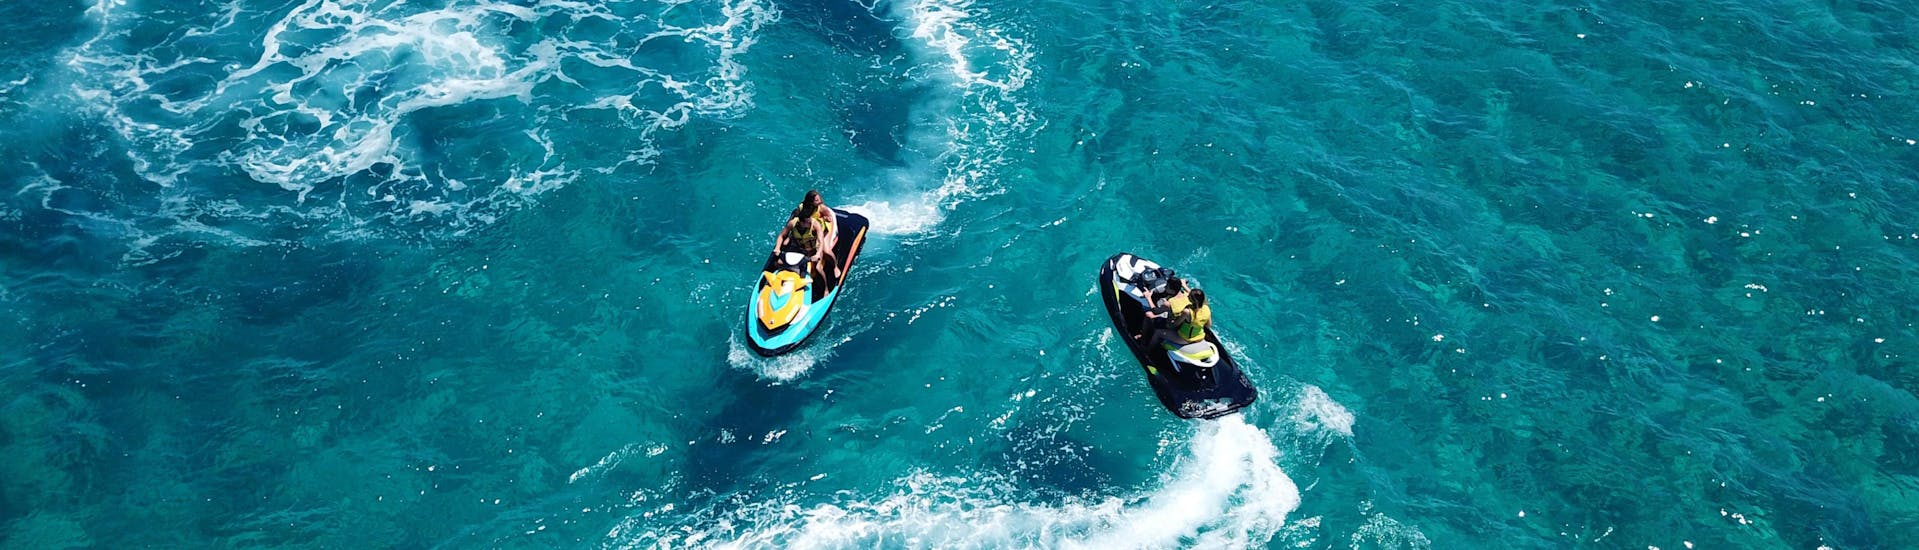 Eine Freundesgruppe beim Banana Boot fahren in der Urlaubsregion Santorini.